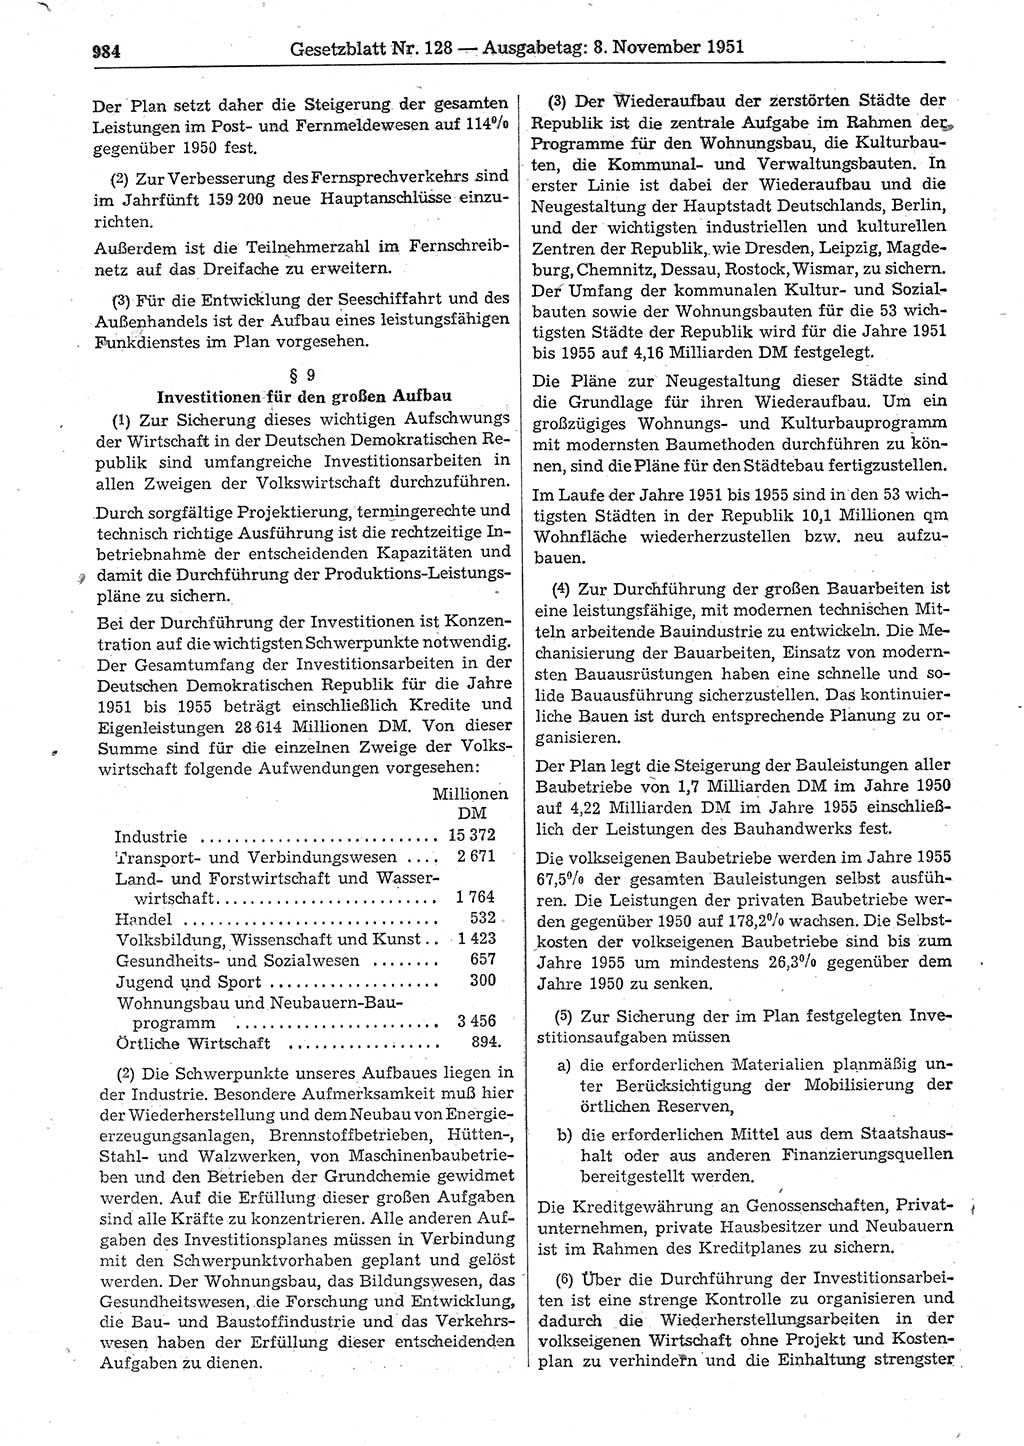 Gesetzblatt (GBl.) der Deutschen Demokratischen Republik (DDR) 1951, Seite 984 (GBl. DDR 1951, S. 984)